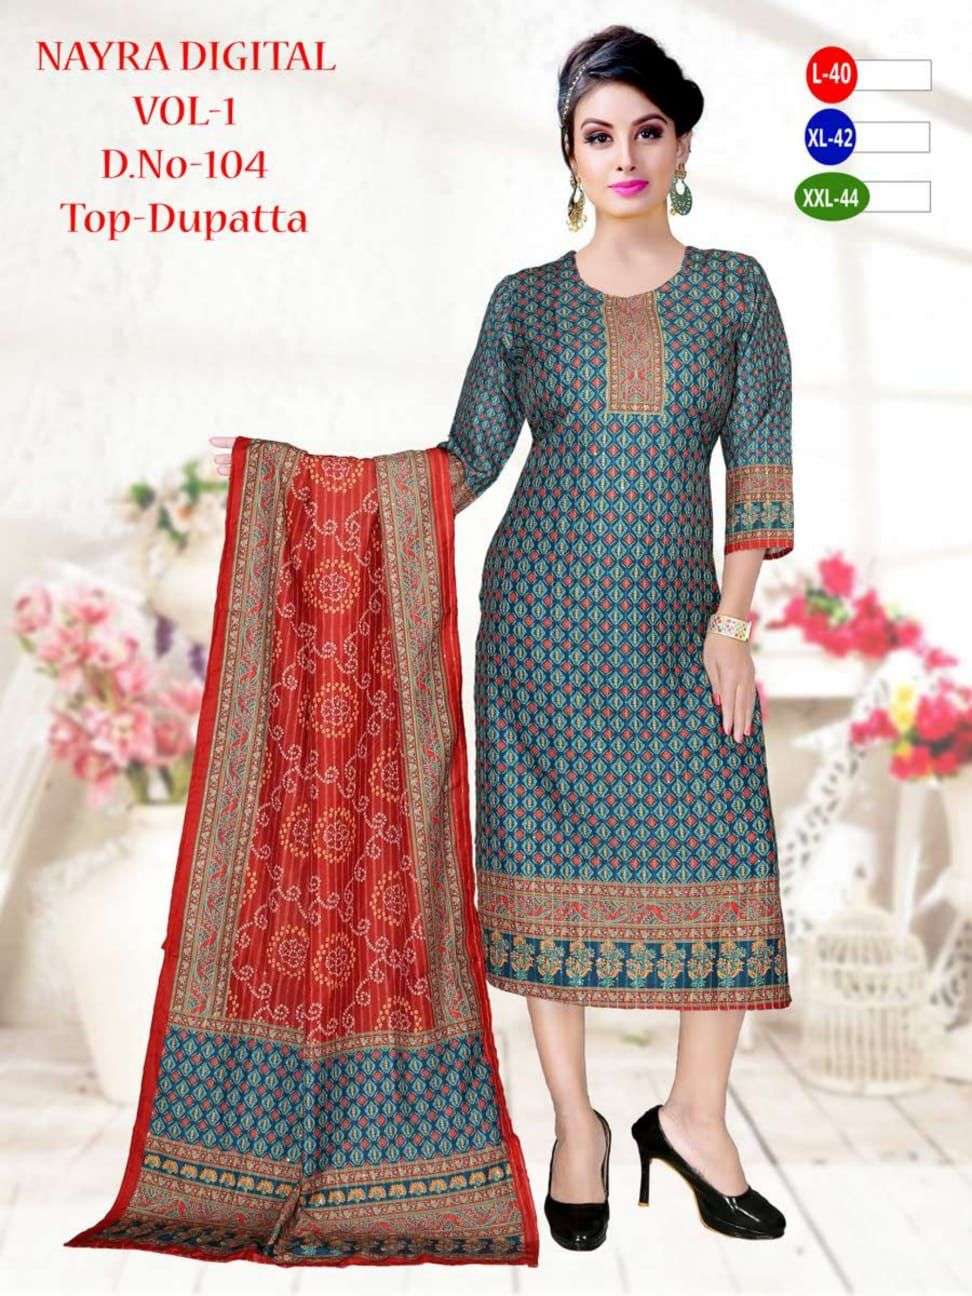 Nayara Digital By Nayara Designer Wholesale Online Kurtis With Dupatta Set